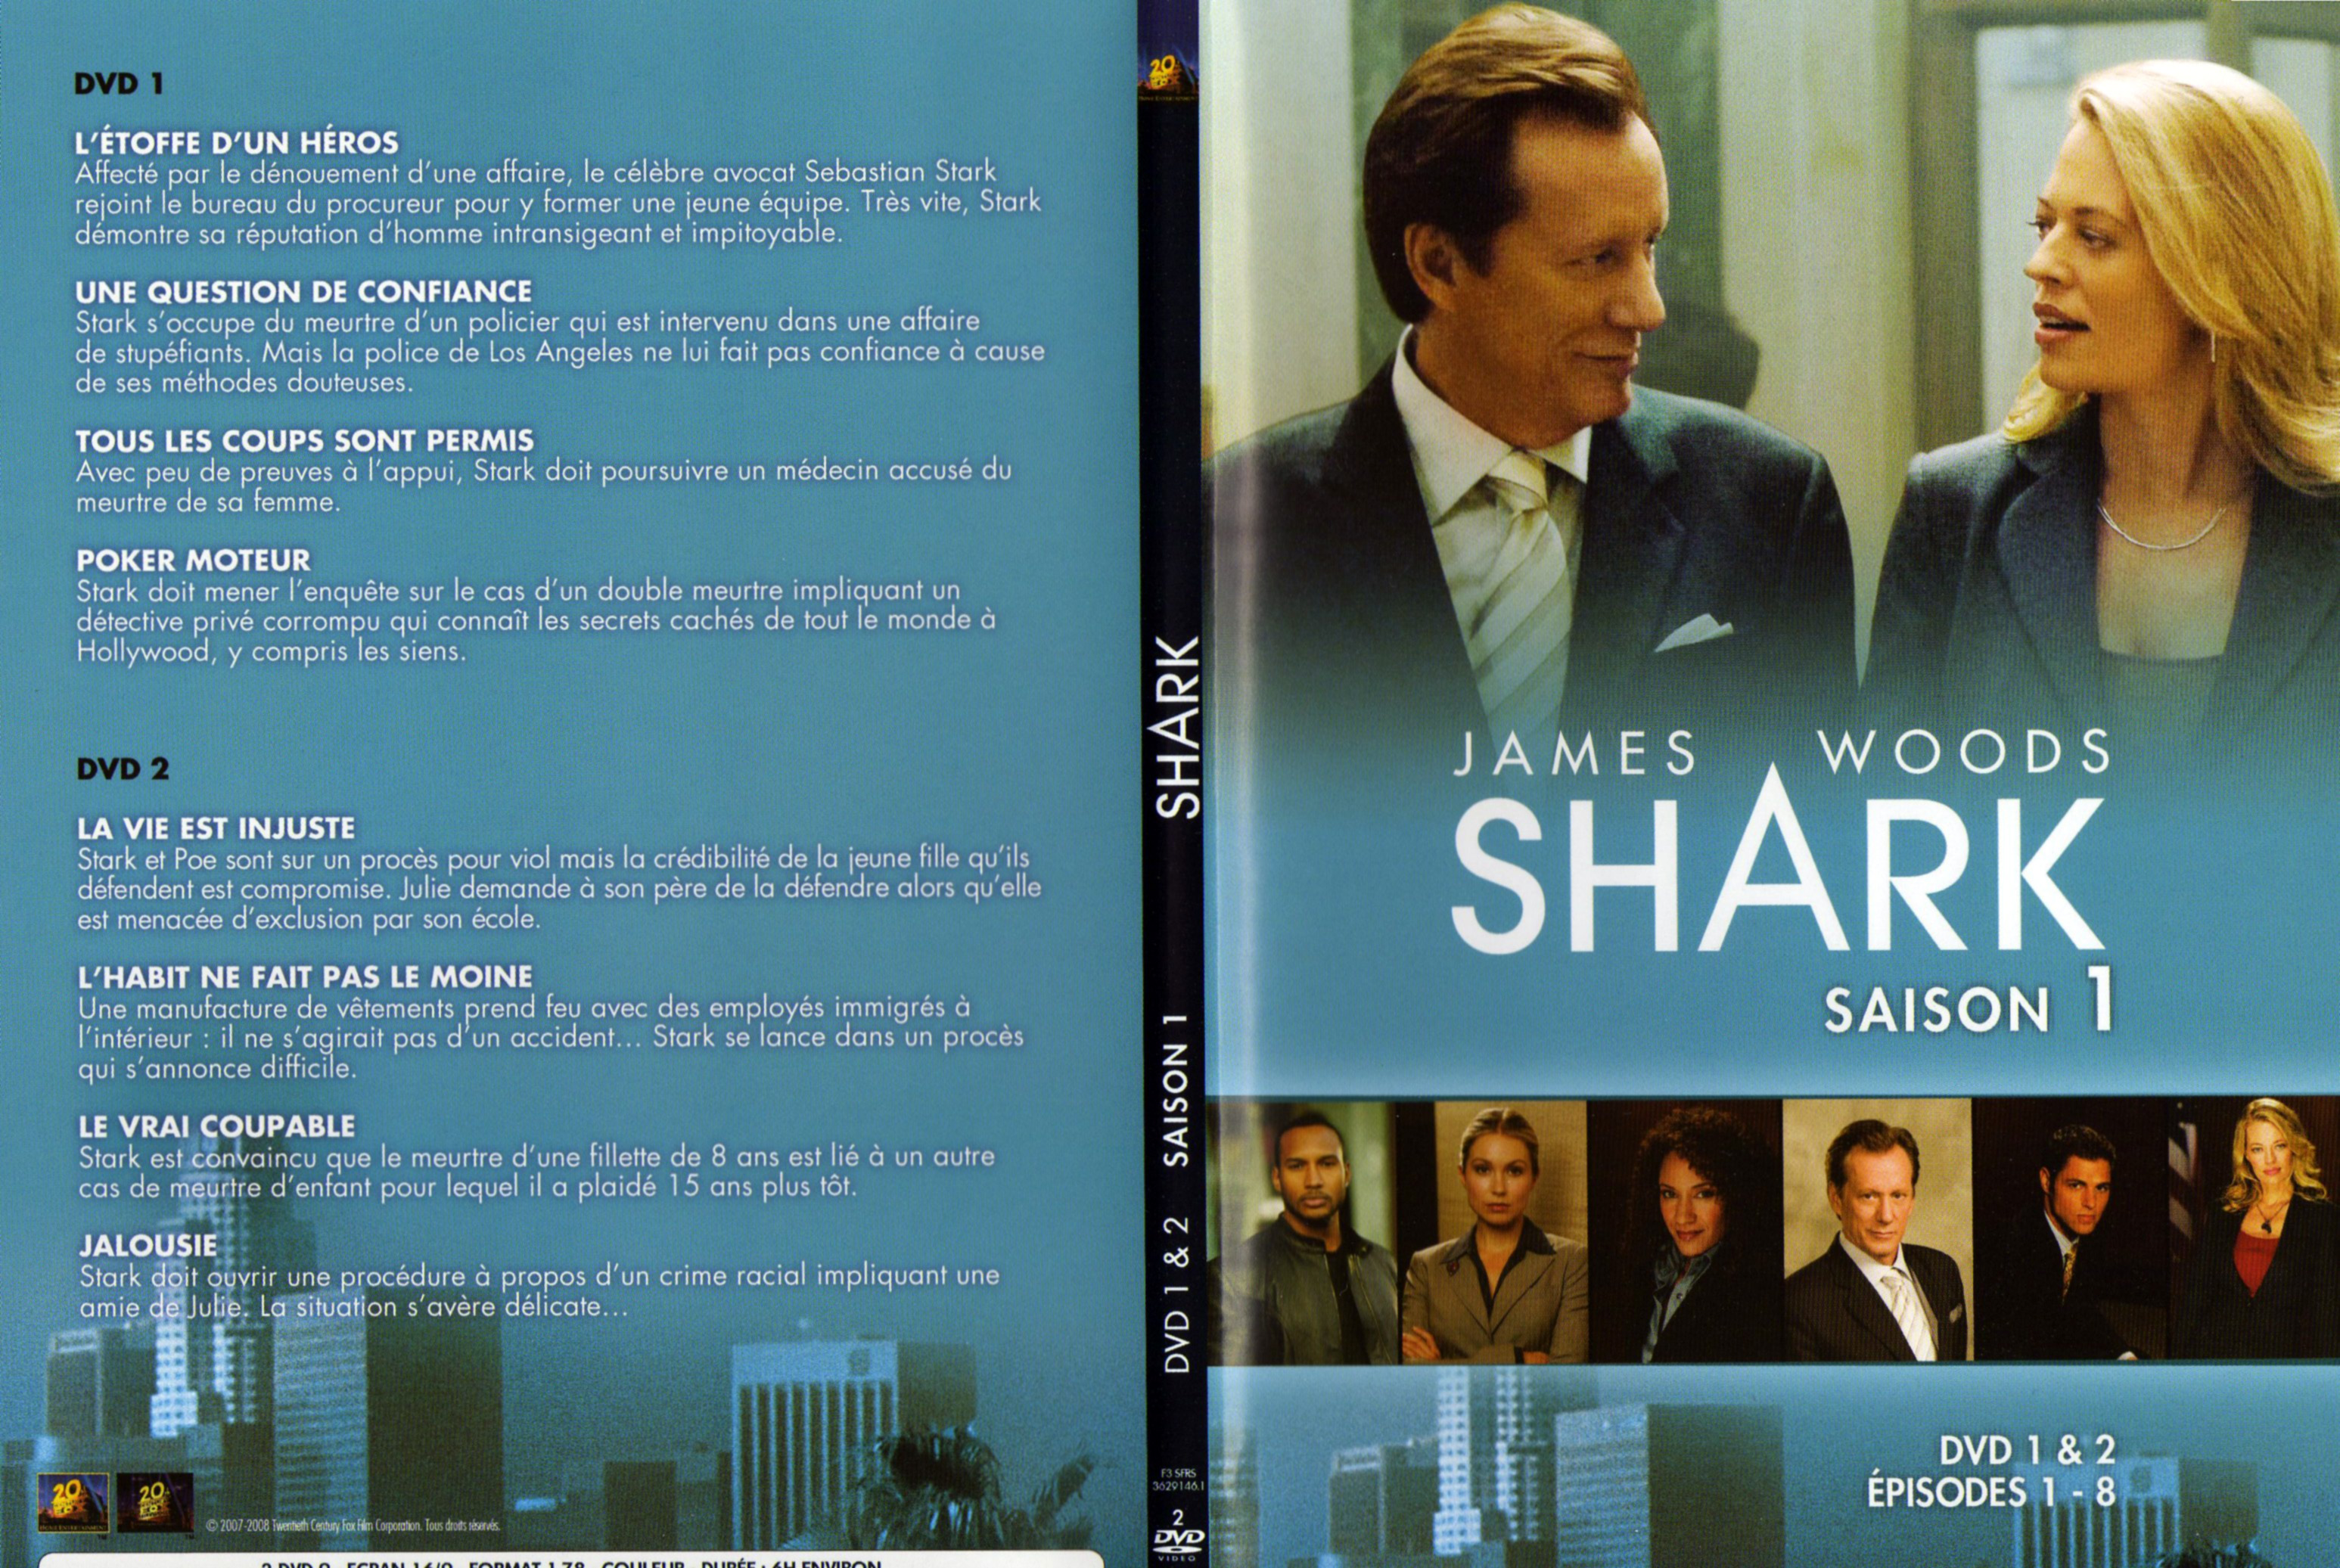 Jaquette DVD Shark Saison 1 DVD 1